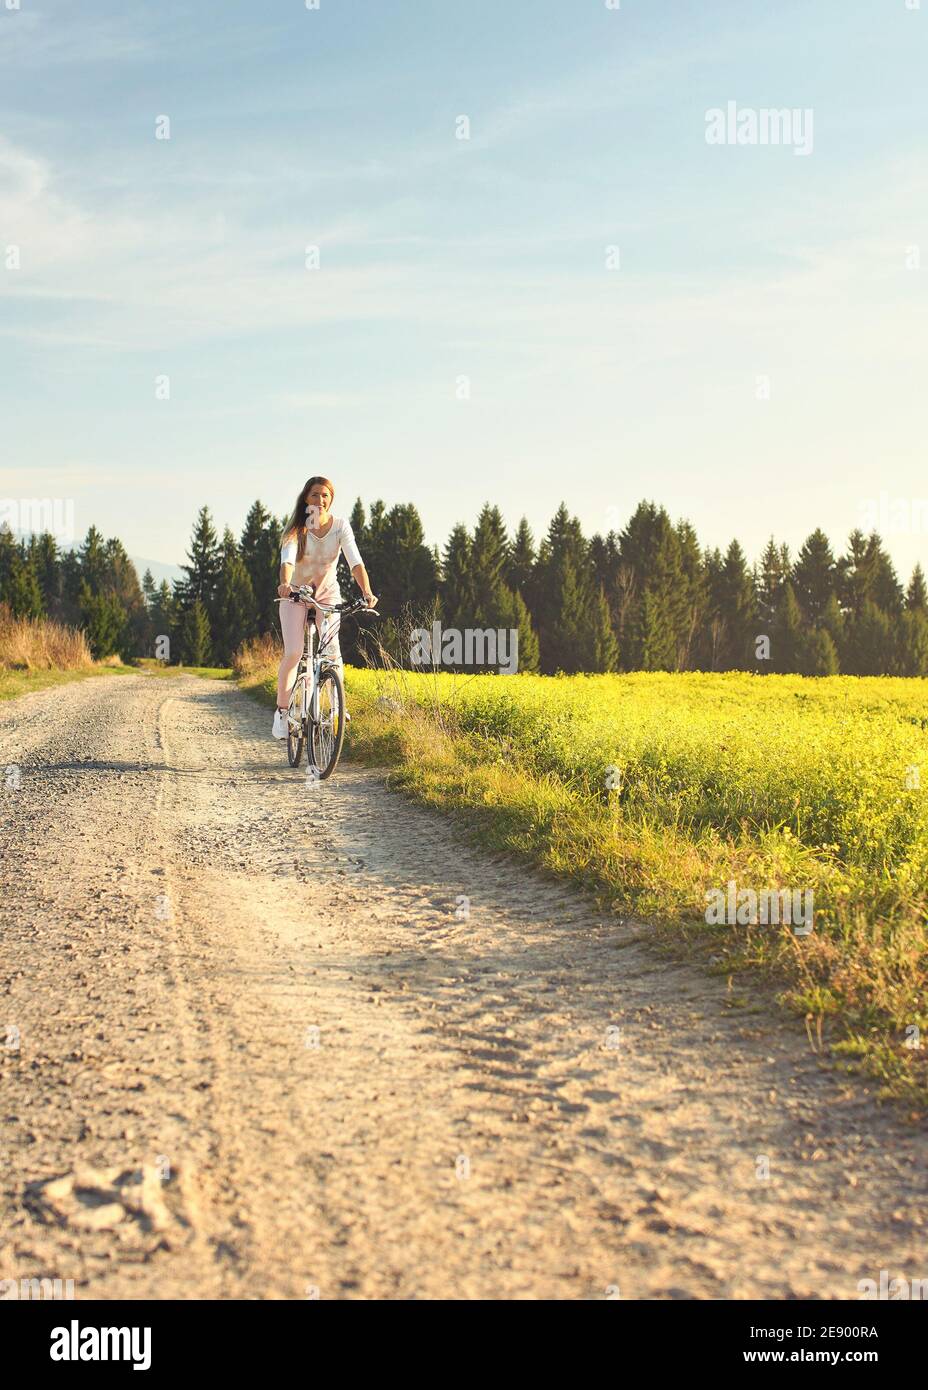 Junge Frau im Sommer leichte Kleidung fährt Fahrrad auf staubigen Straße in Richtung Kamera, Nachmittag Sonne scheint auf Felder und Wald im Hintergrund Stockfoto